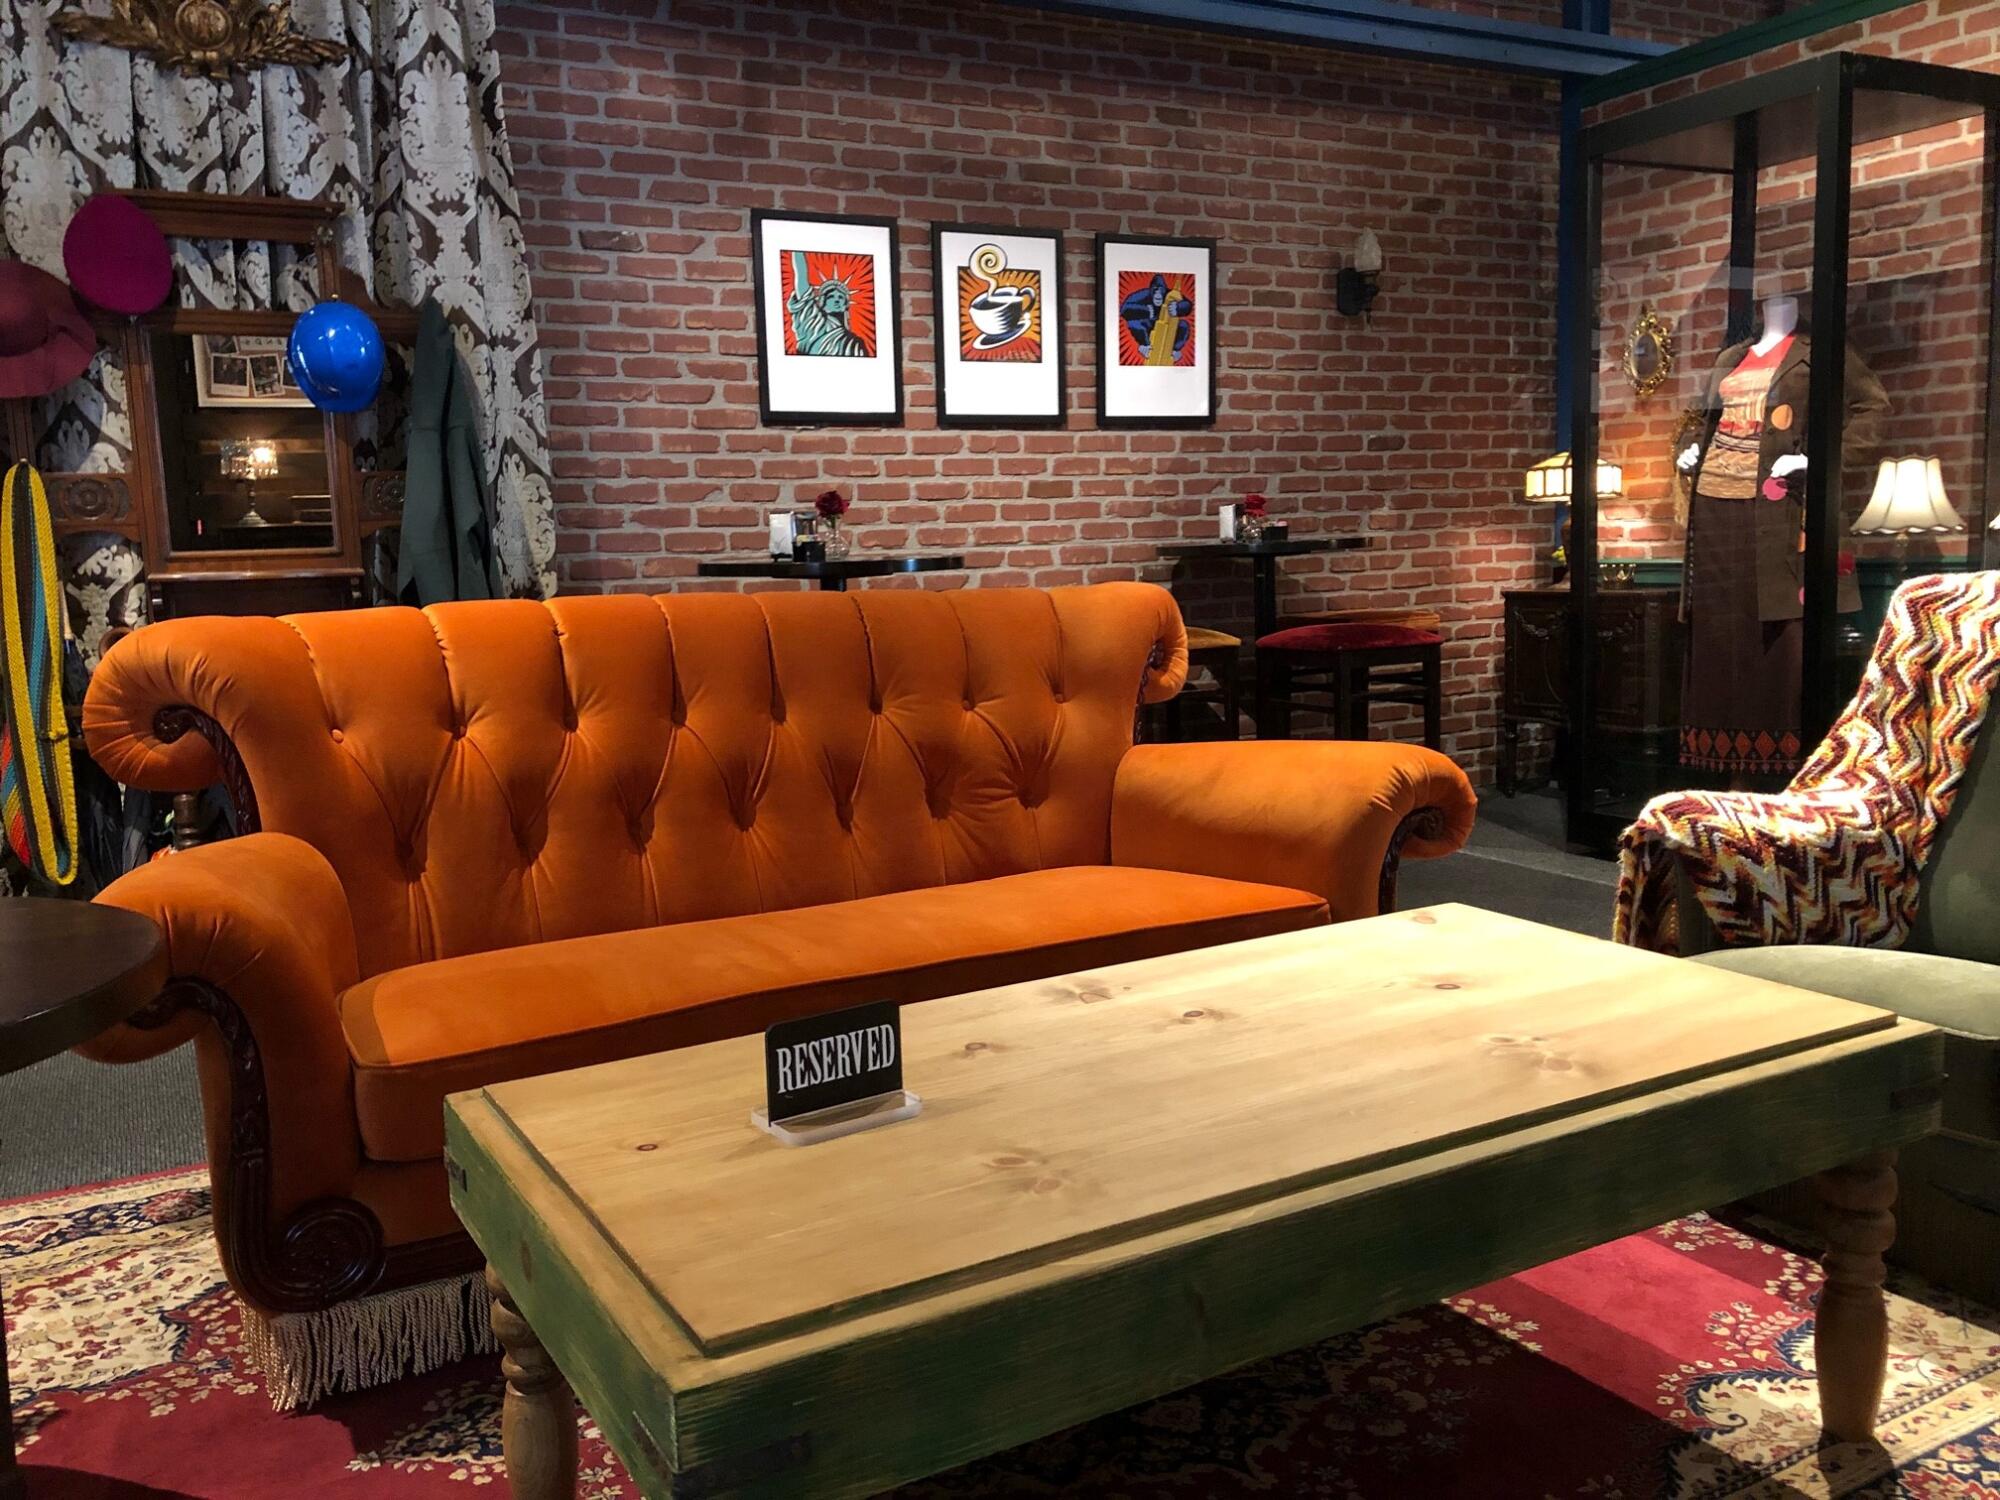 Los visitantes hasta pueden comer y tomarse un ataza de cafe en área inspirada en el sitcom Friends.